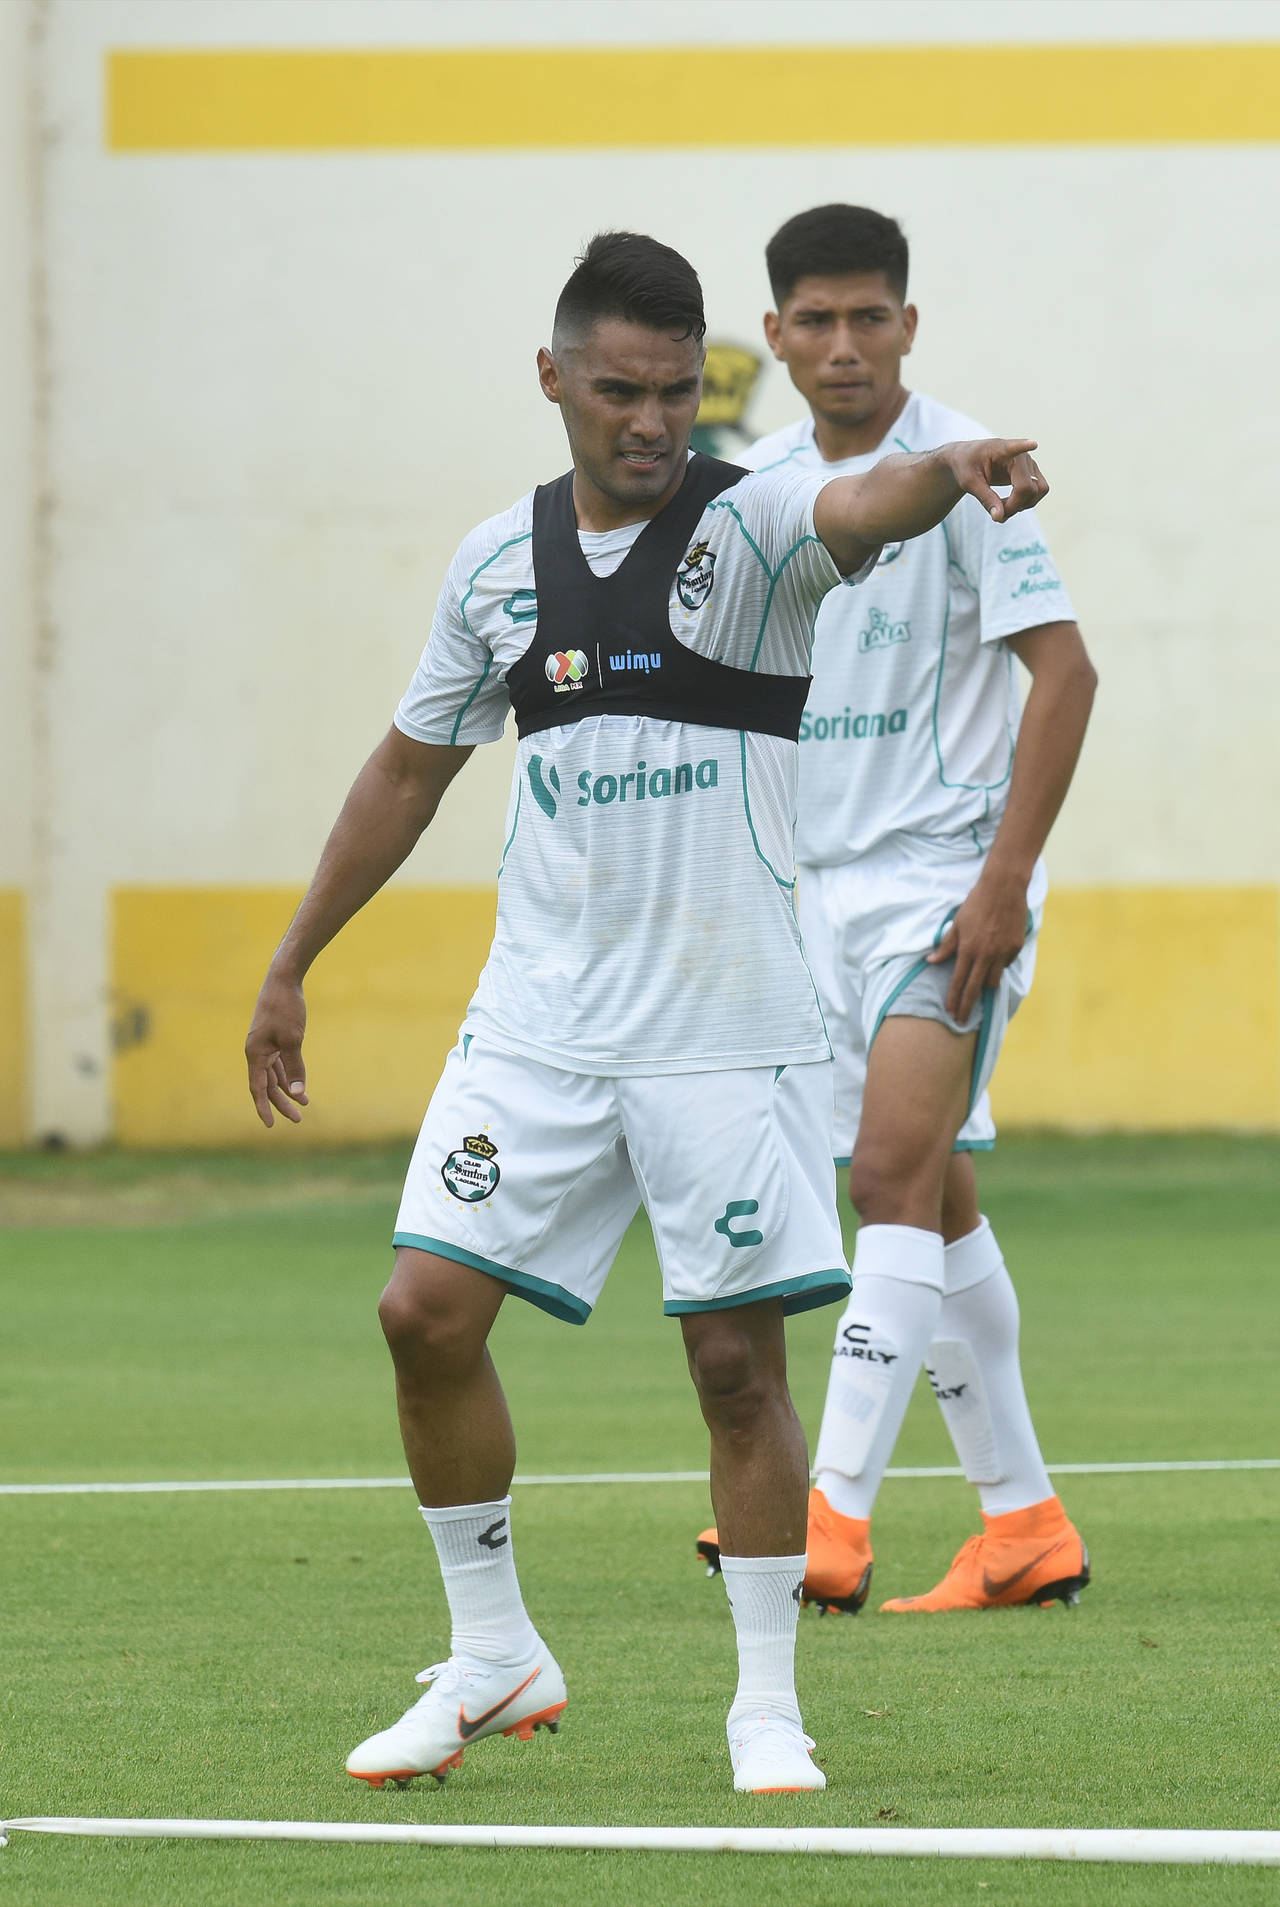 Los Guerreros del Santos Laguna continúan con su preparación de cara al siguiente torneo Apertura 2018. Mañana miércoles, se presentará su nuevo uniforme. (Archivo)